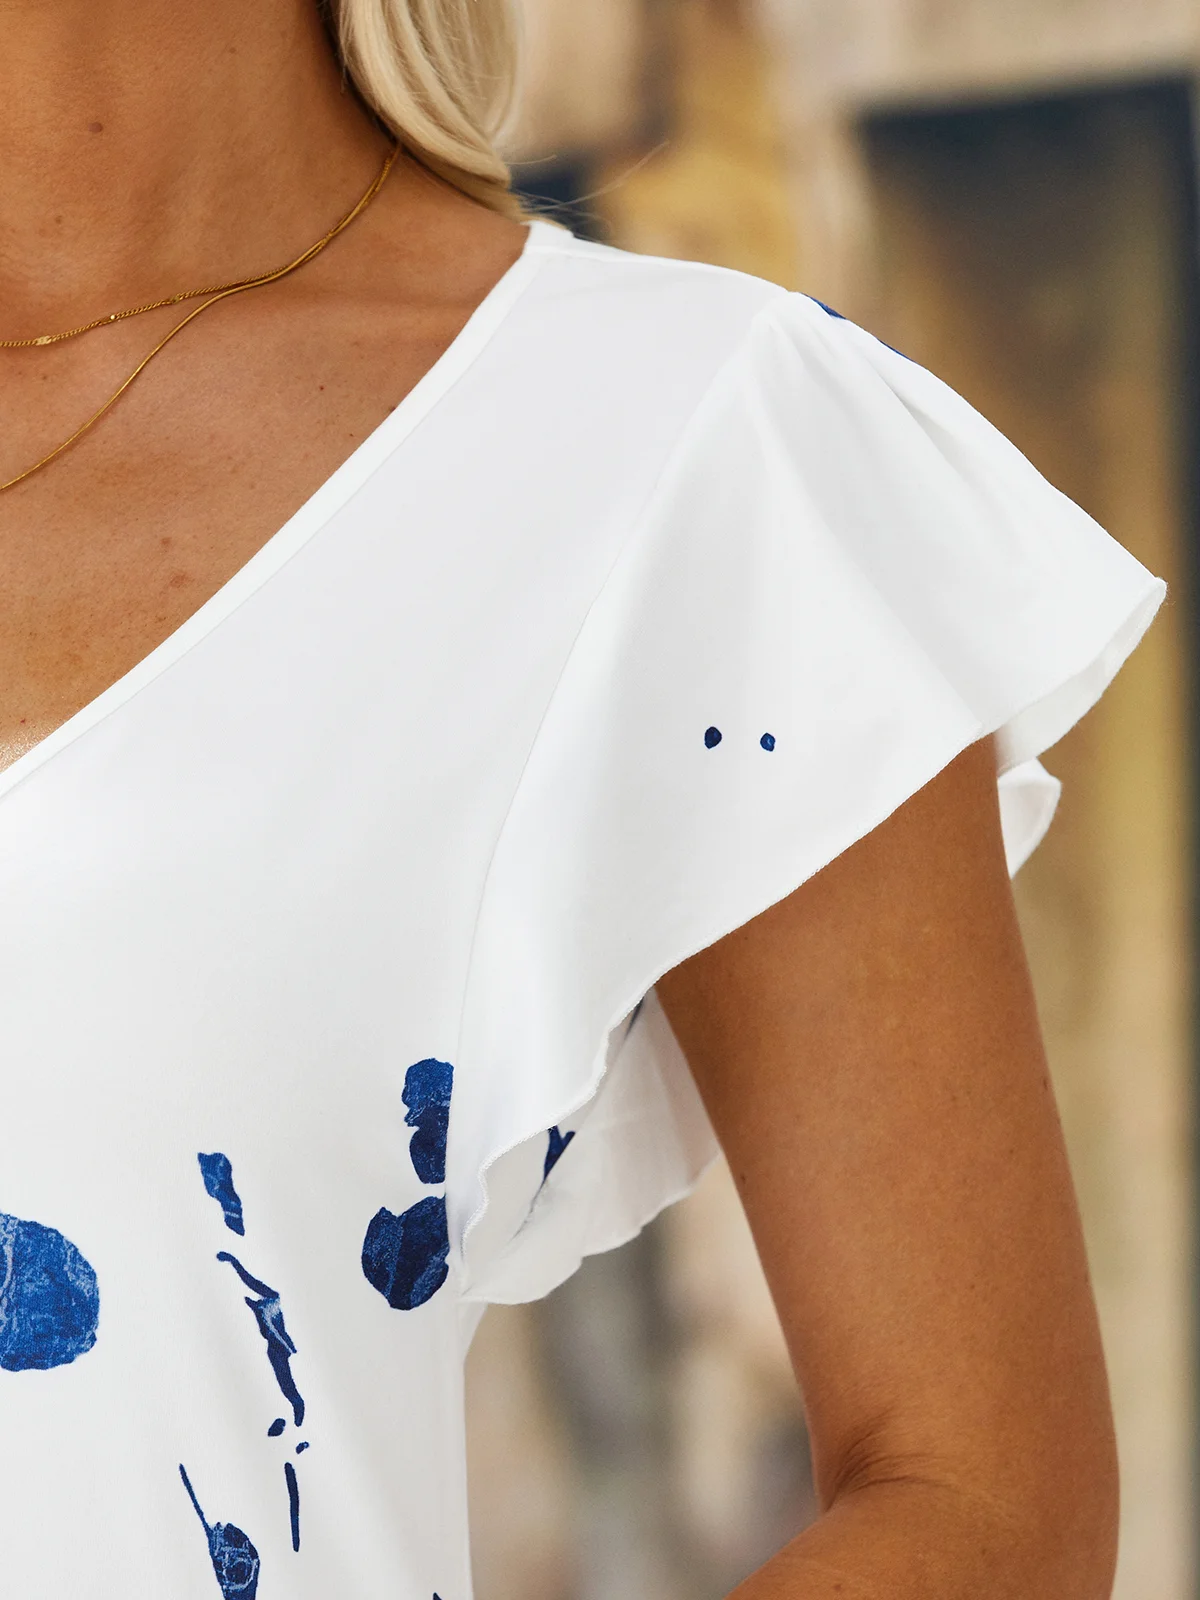 Floral Short Sleeve  Printed  Cotton-blend  V neck Vintage Summer  Blue Dress